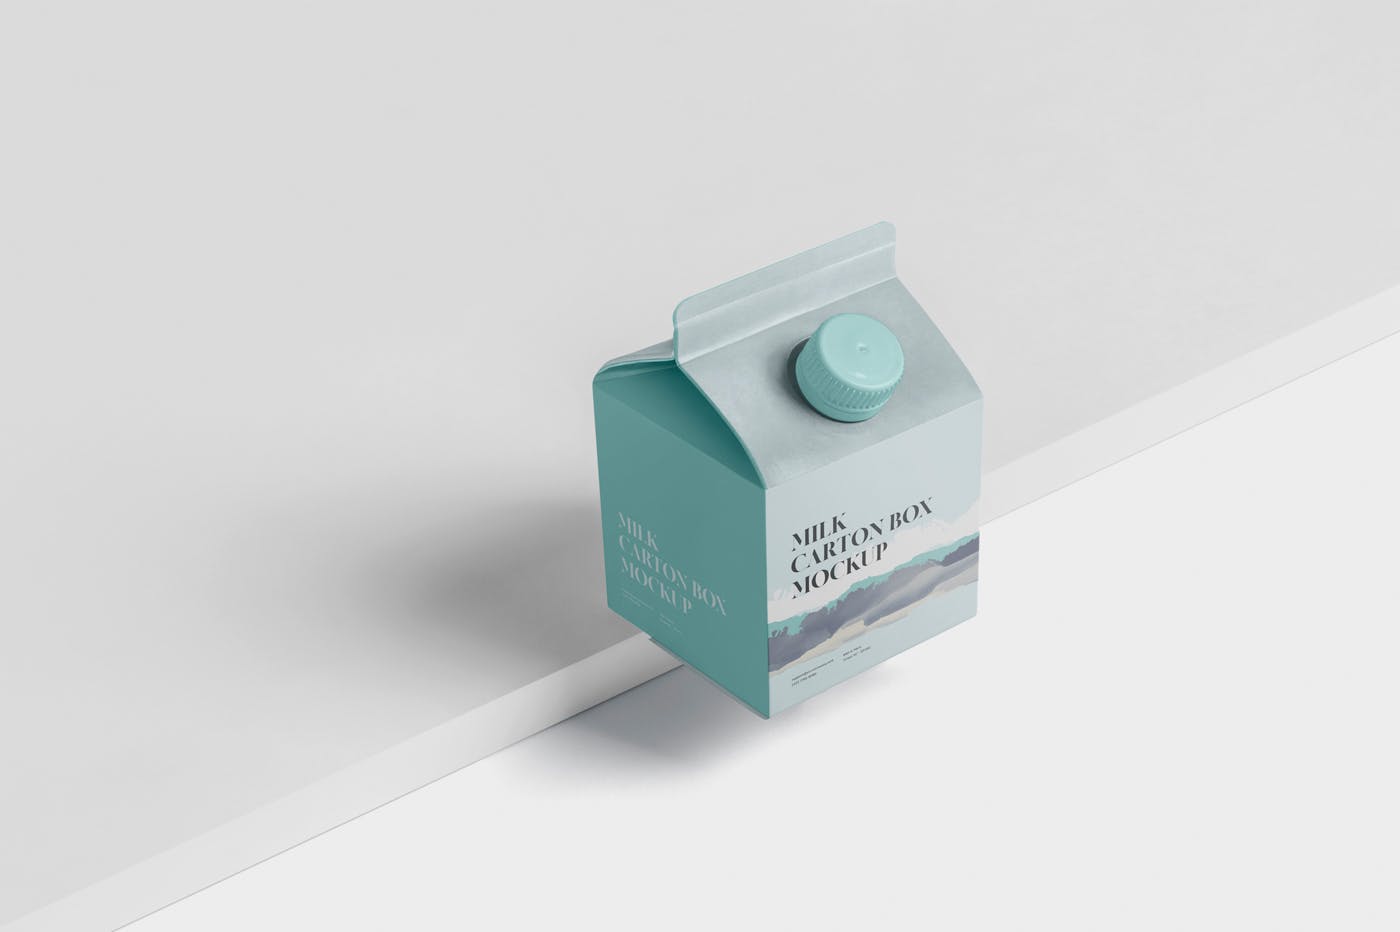 250毫升果汁/牛奶包装盒外观设计样机模板 Juice – Milk Mockup – 250ml Carton Box – small siz插图(3)